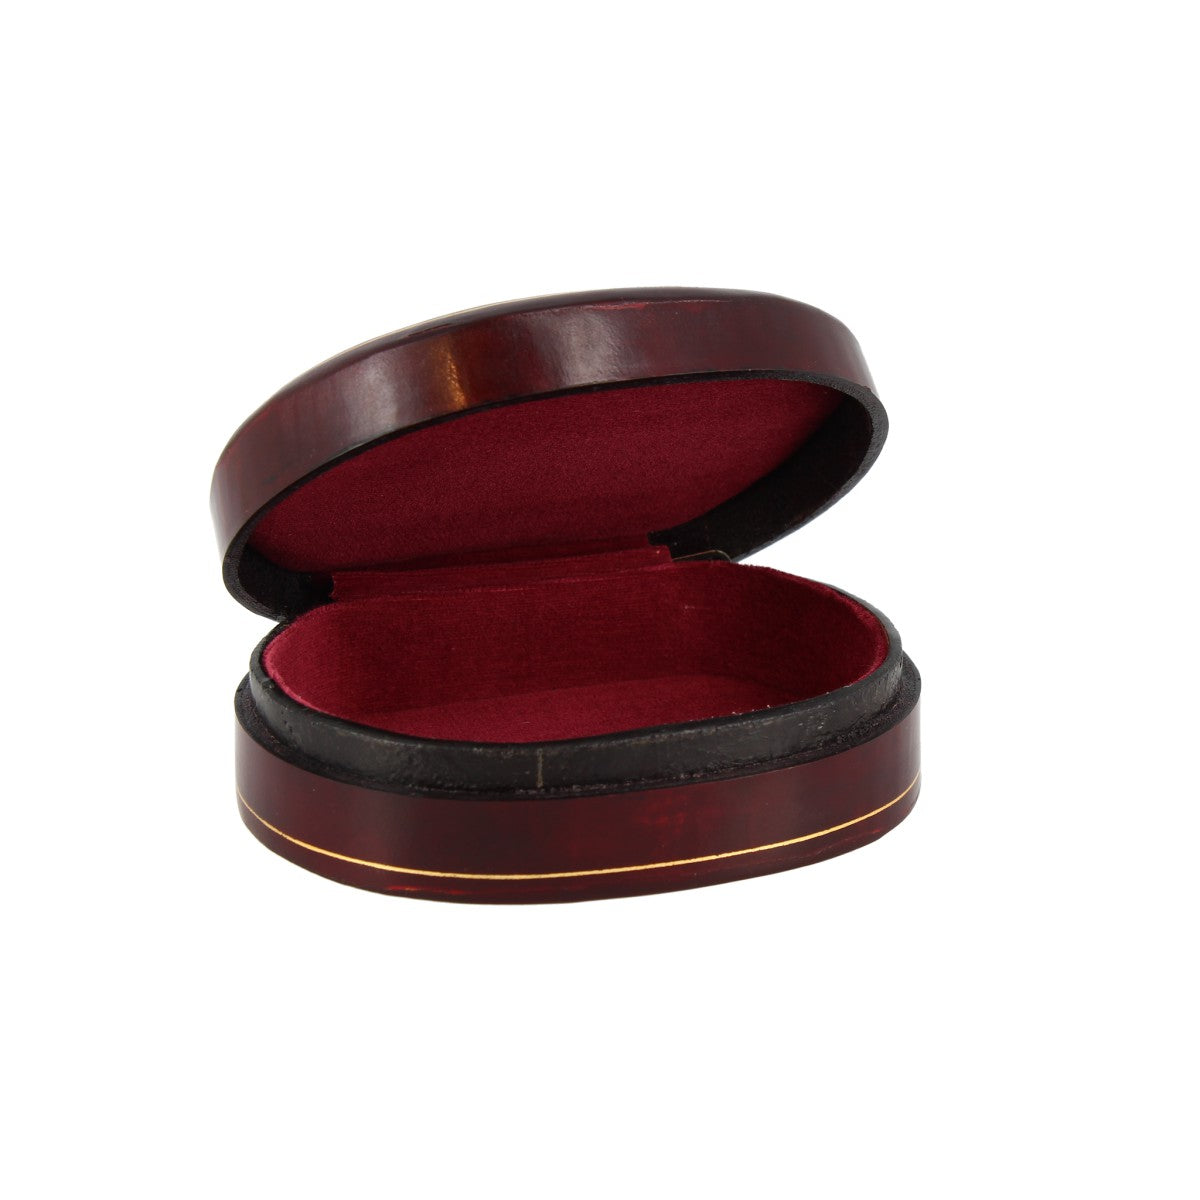 Portagioie ovale fatto in cuoio per gioielli disponibile in vari colori